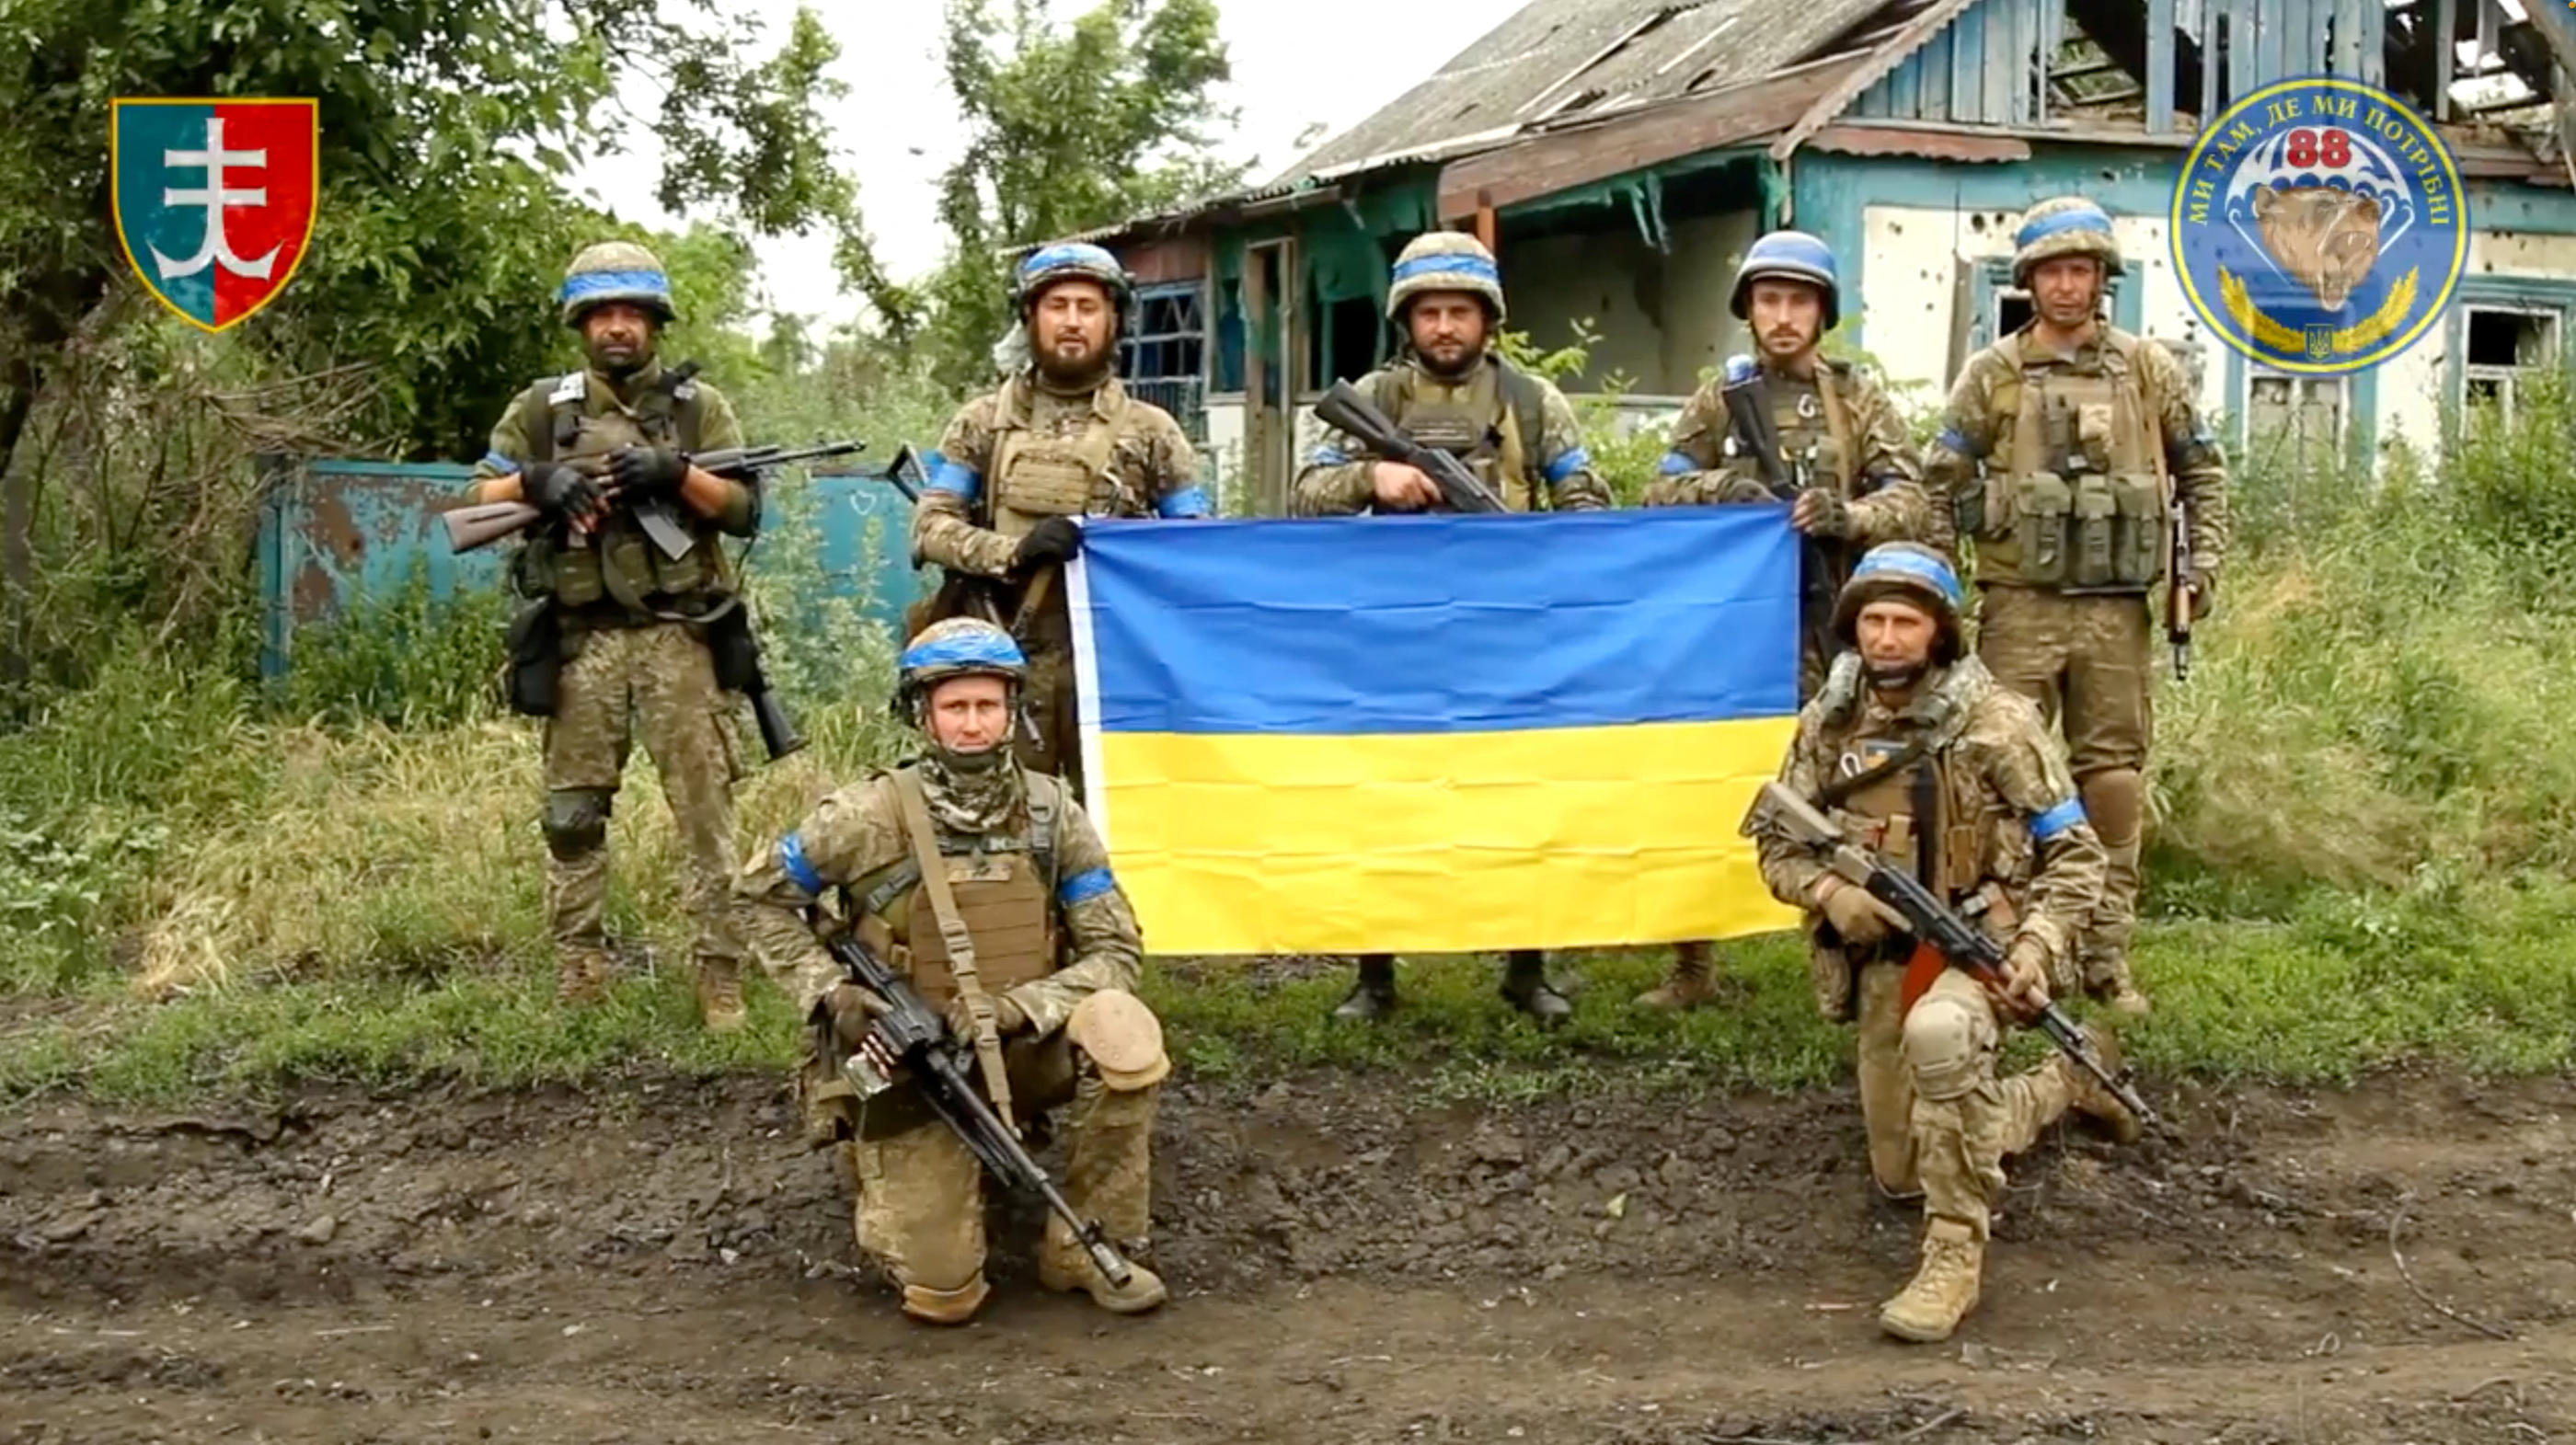 Des militaires ukrainiens posent avec le drapeau de leur pays dans le village libéré de Storozheve, dans la région de Dontesk. Reuters via Facebook.